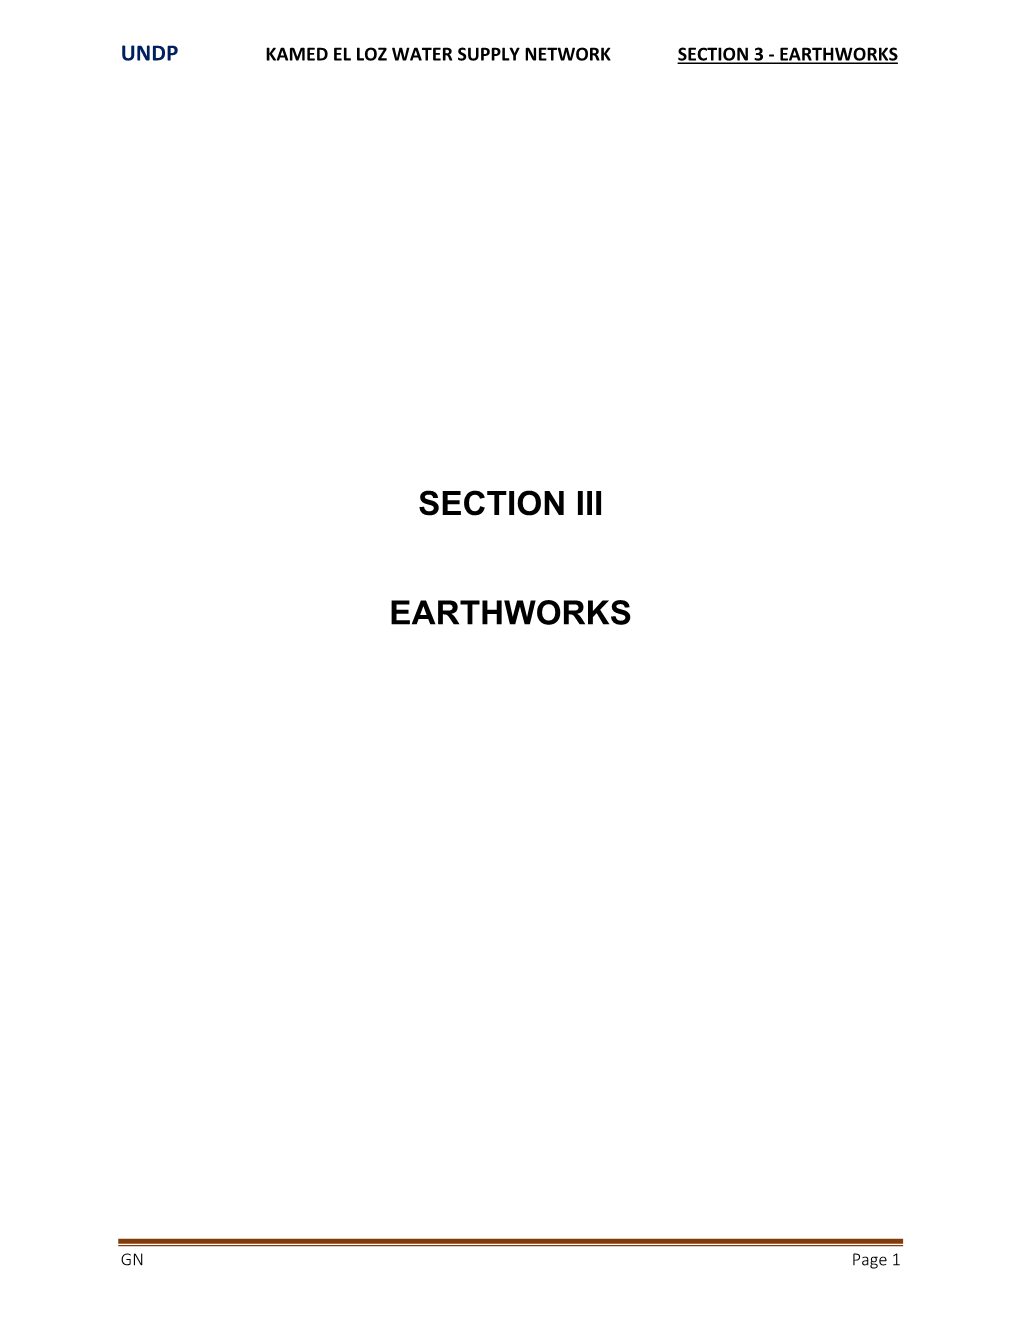 Section Iii Earthworks